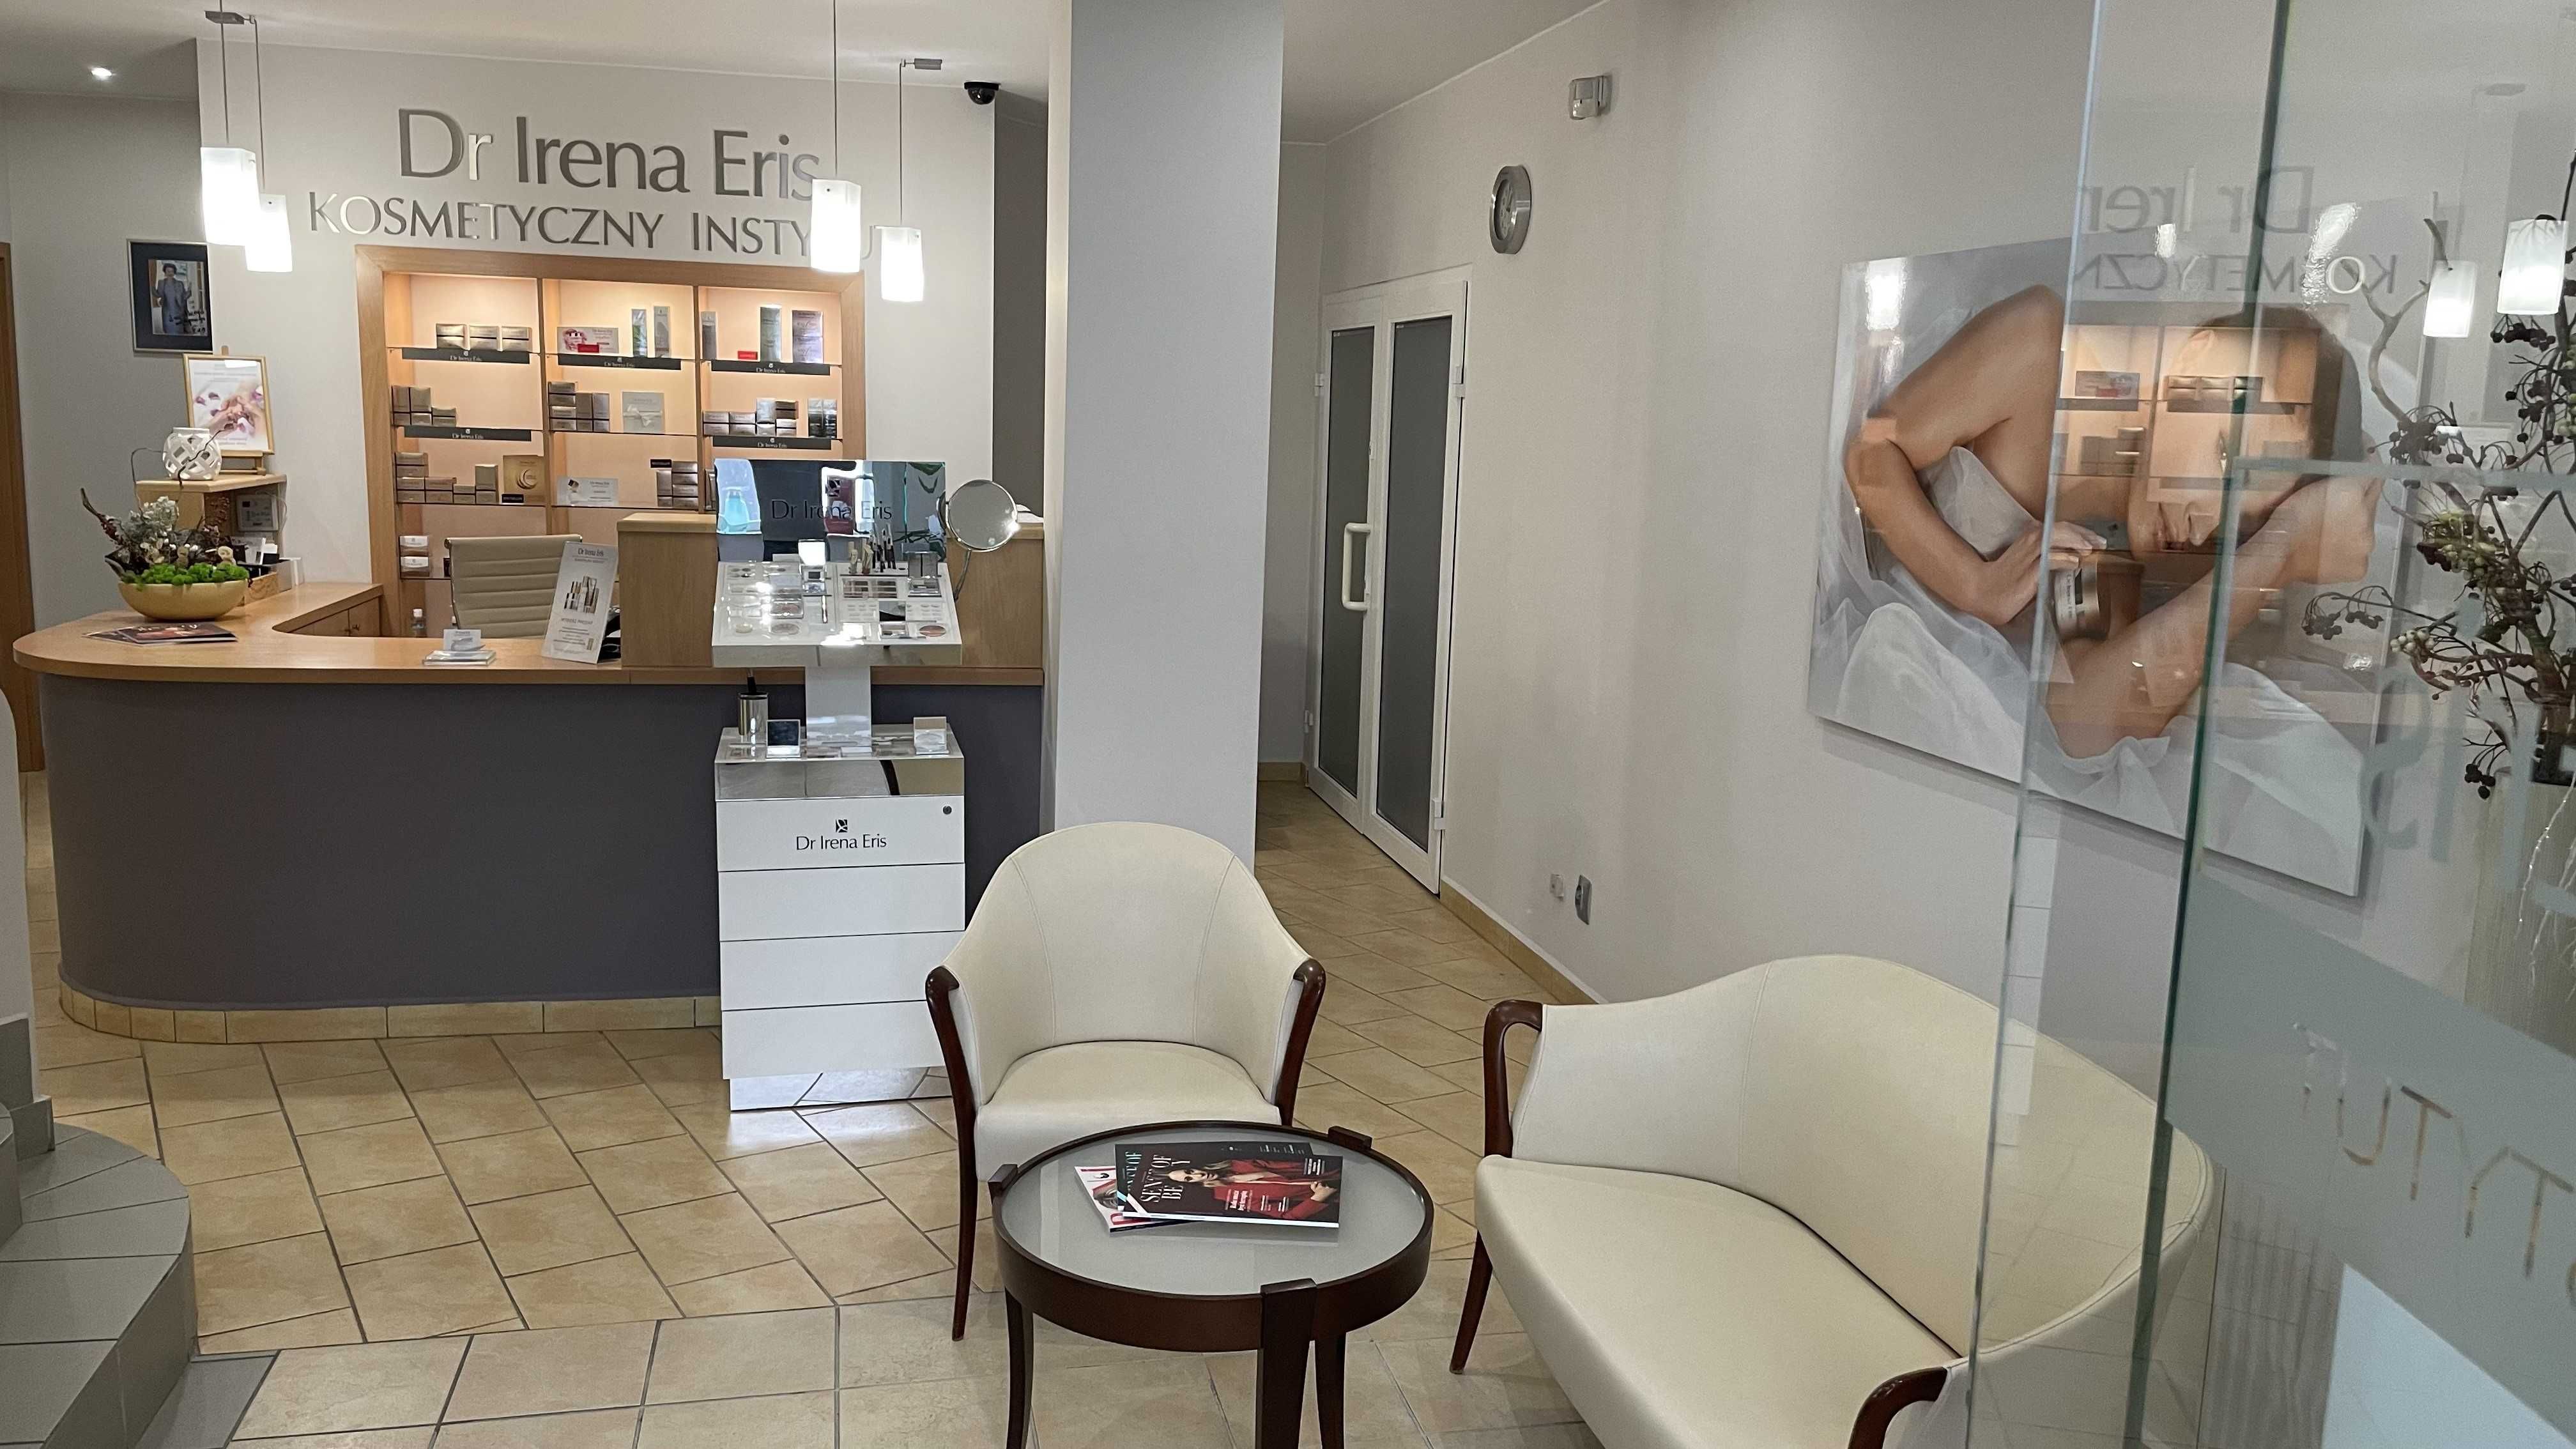 Sprzedam/ Wynajmę Kosmetyczny Instytut Dr Irena Eris w Bełchatowie